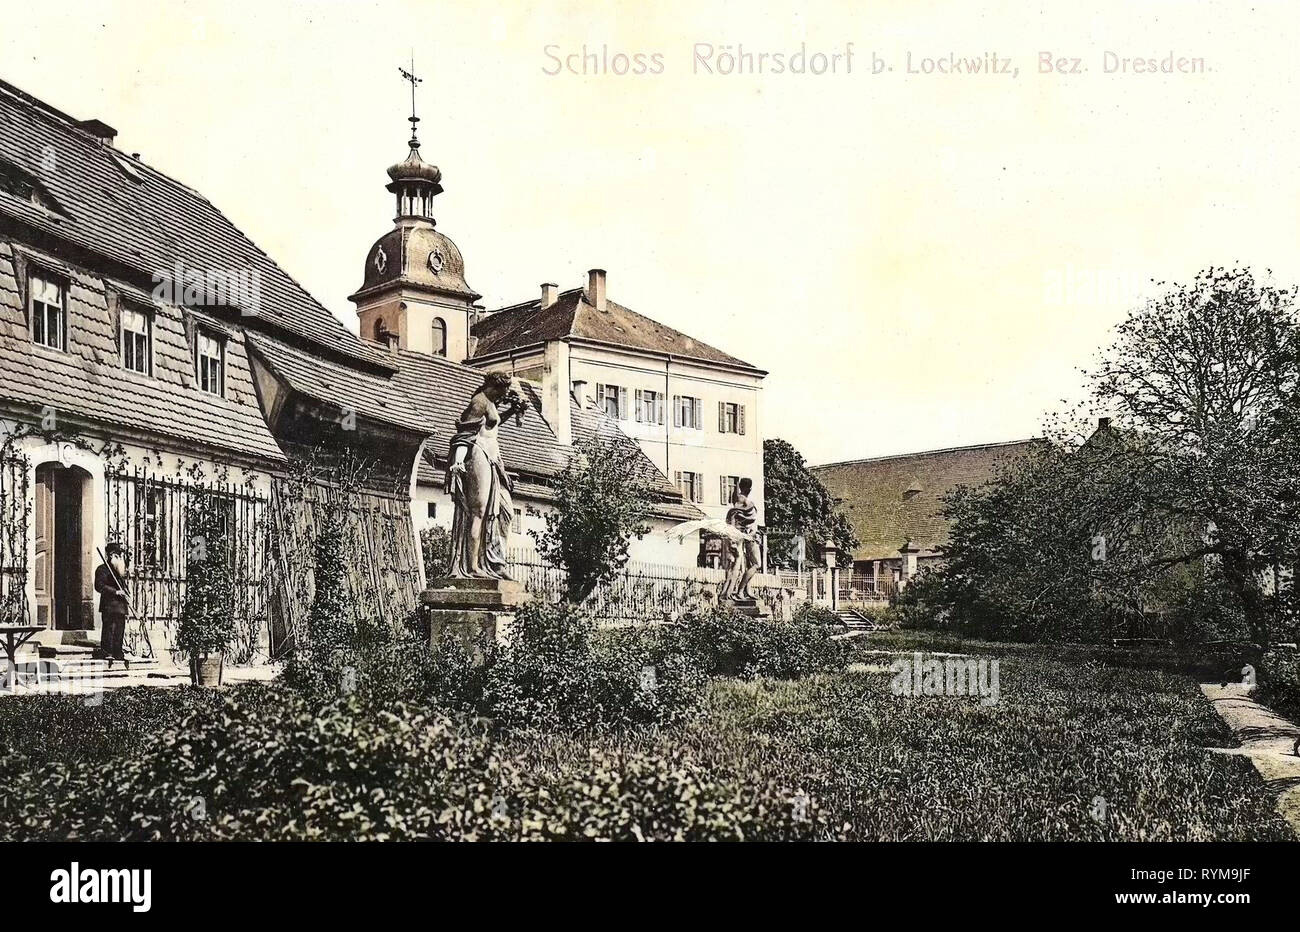 Castles in Landkreis Meißen, Röhrsdorf (Klipphausen), 1905, Landkreis Meißen, Röhrsdorf, Schloß und Schloßgarten, Germany Stock Photo